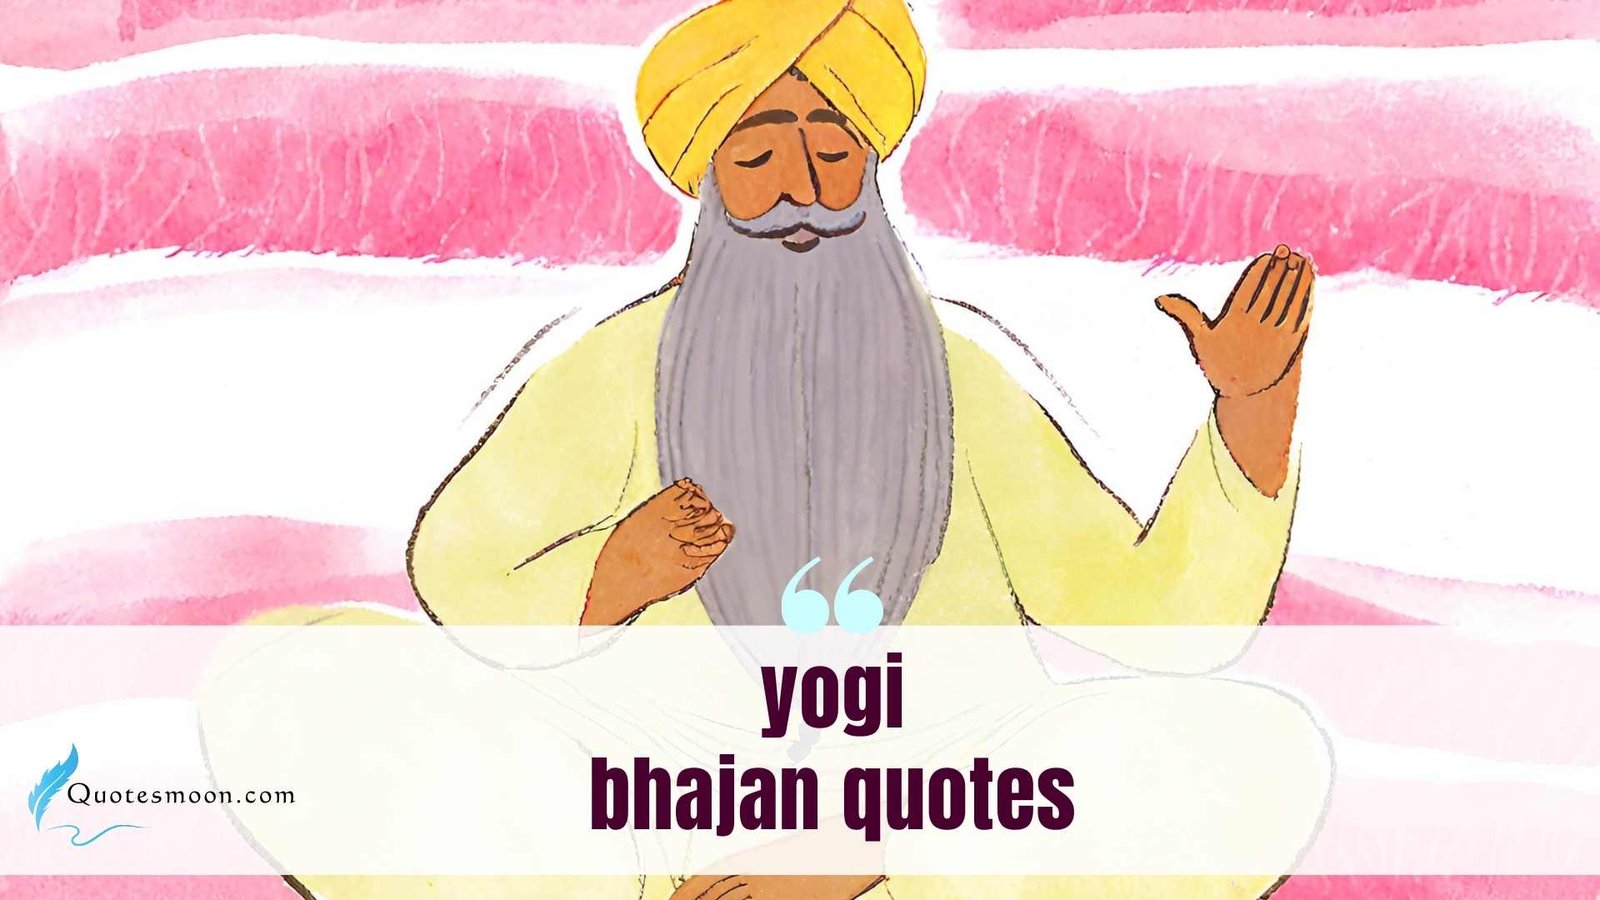 yogi bhajan quotes images